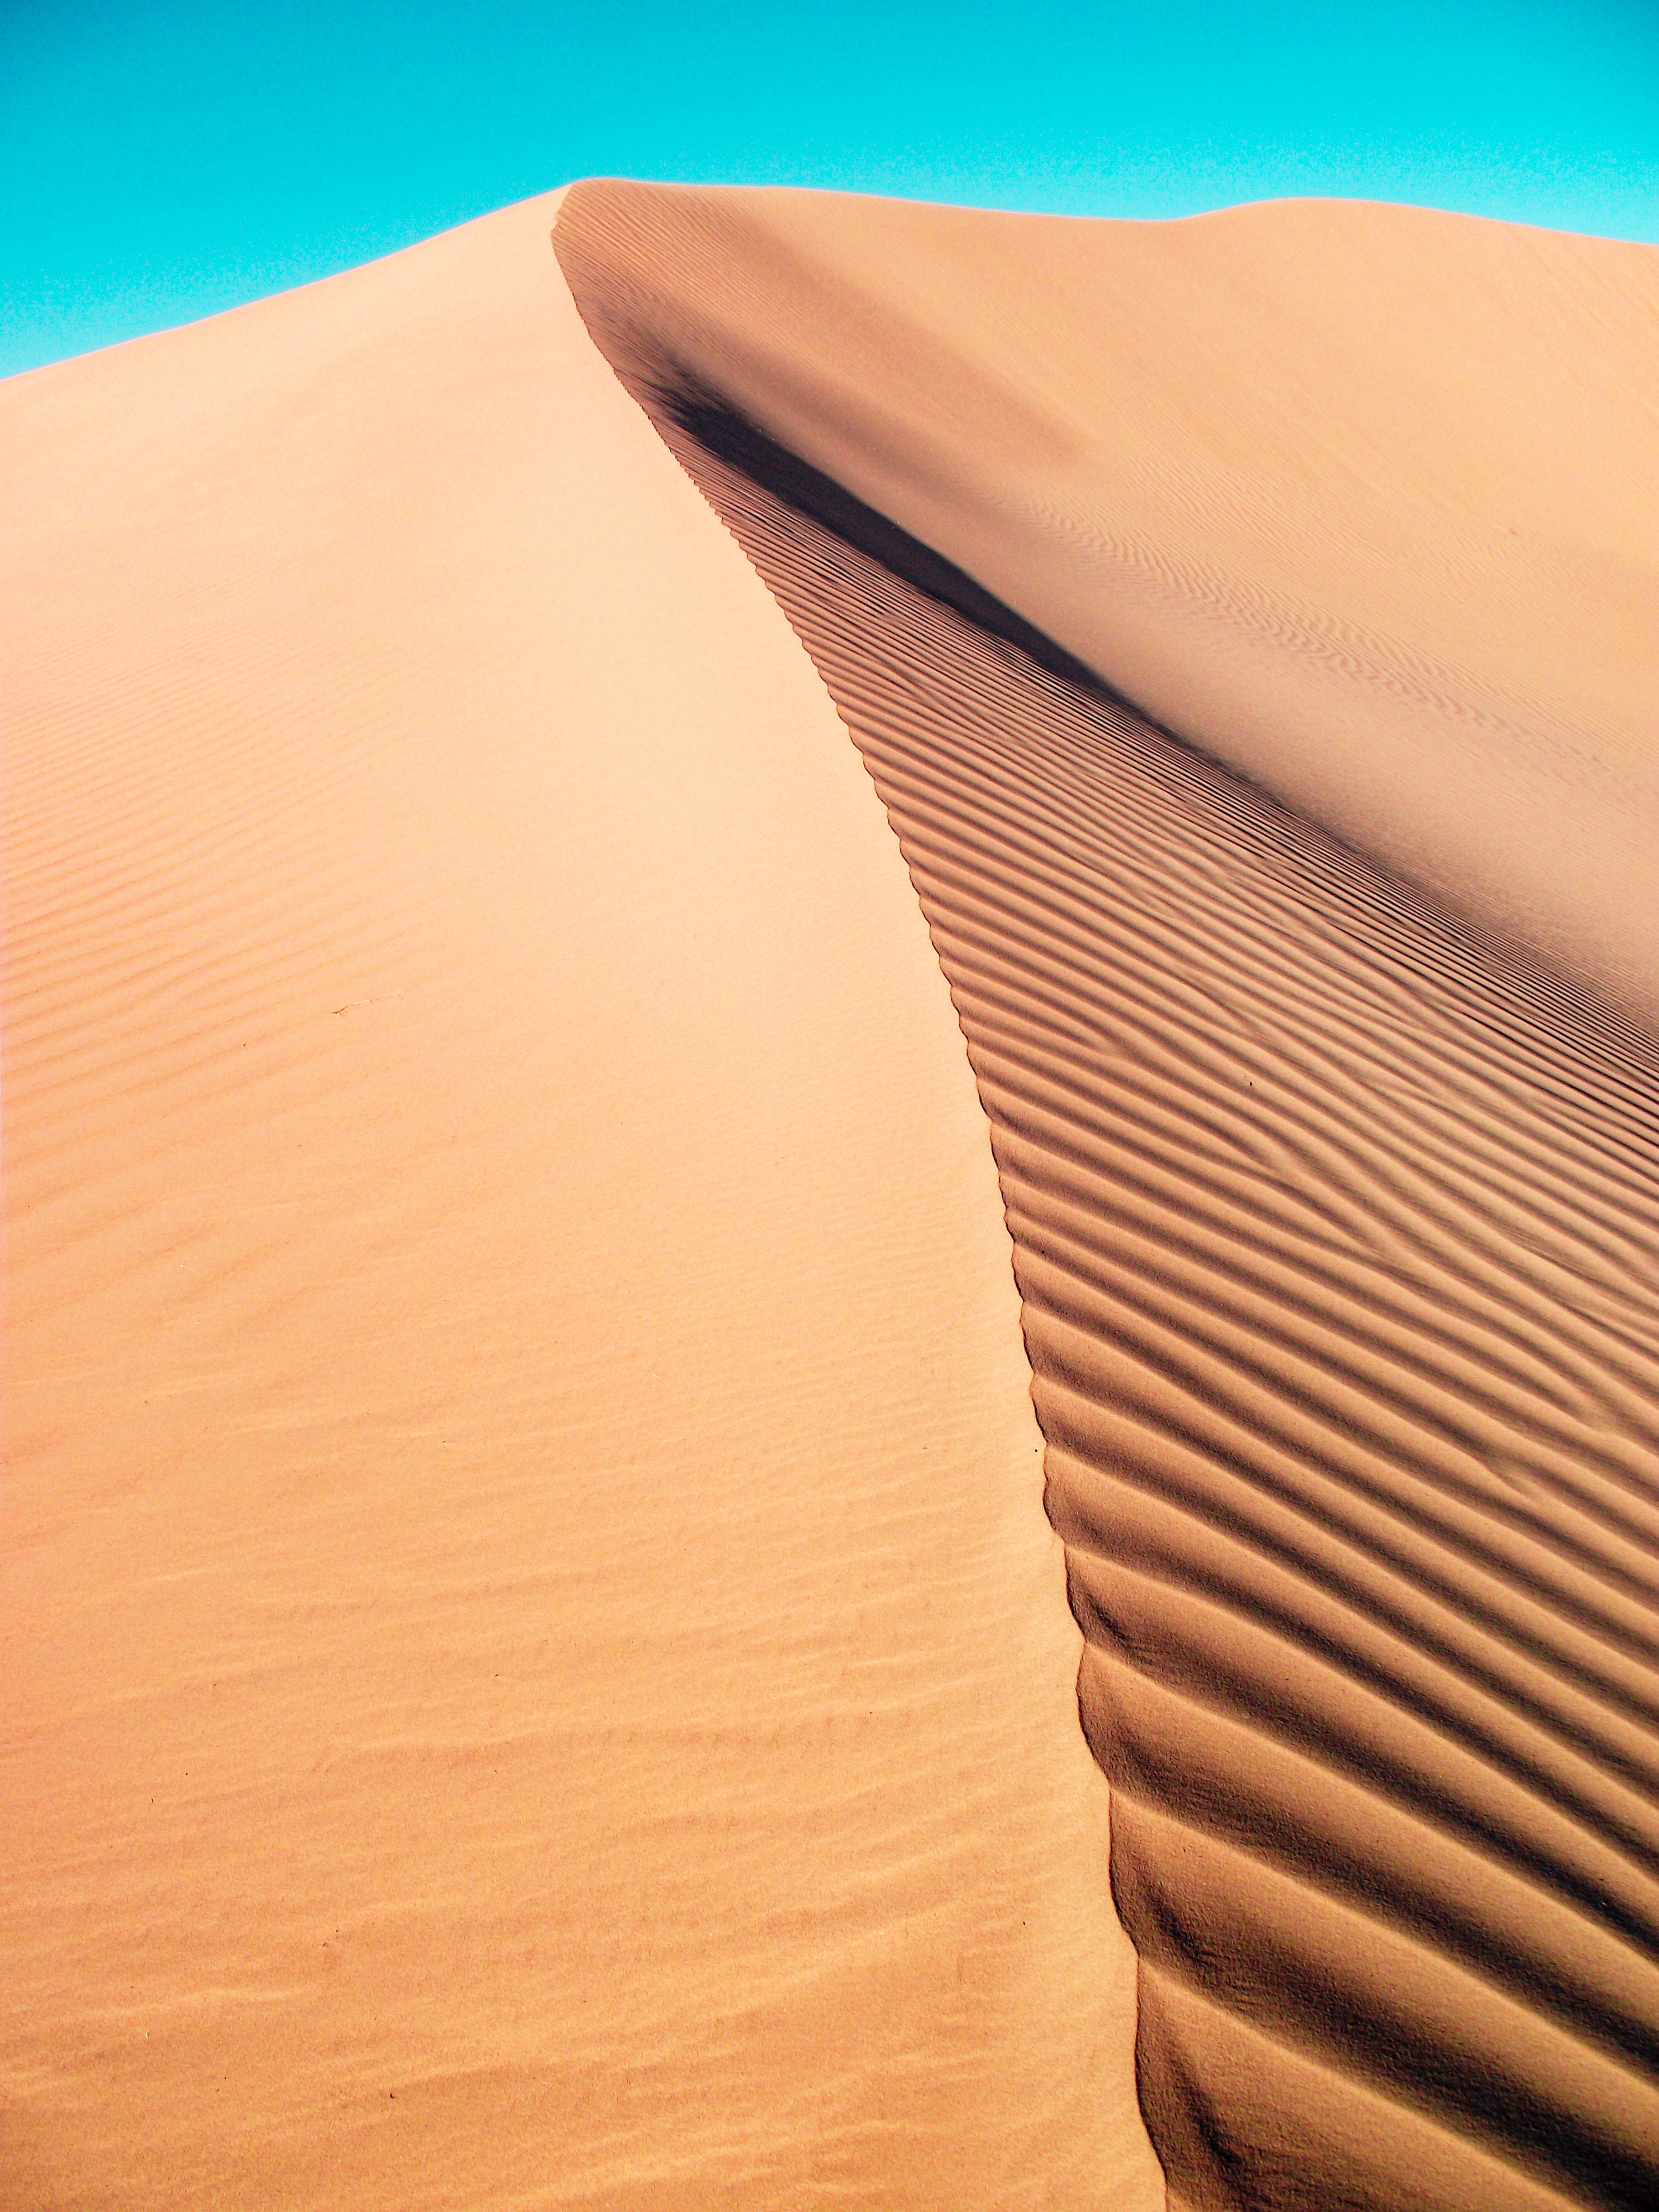 Best Desert Photo · 100% Free Downloads